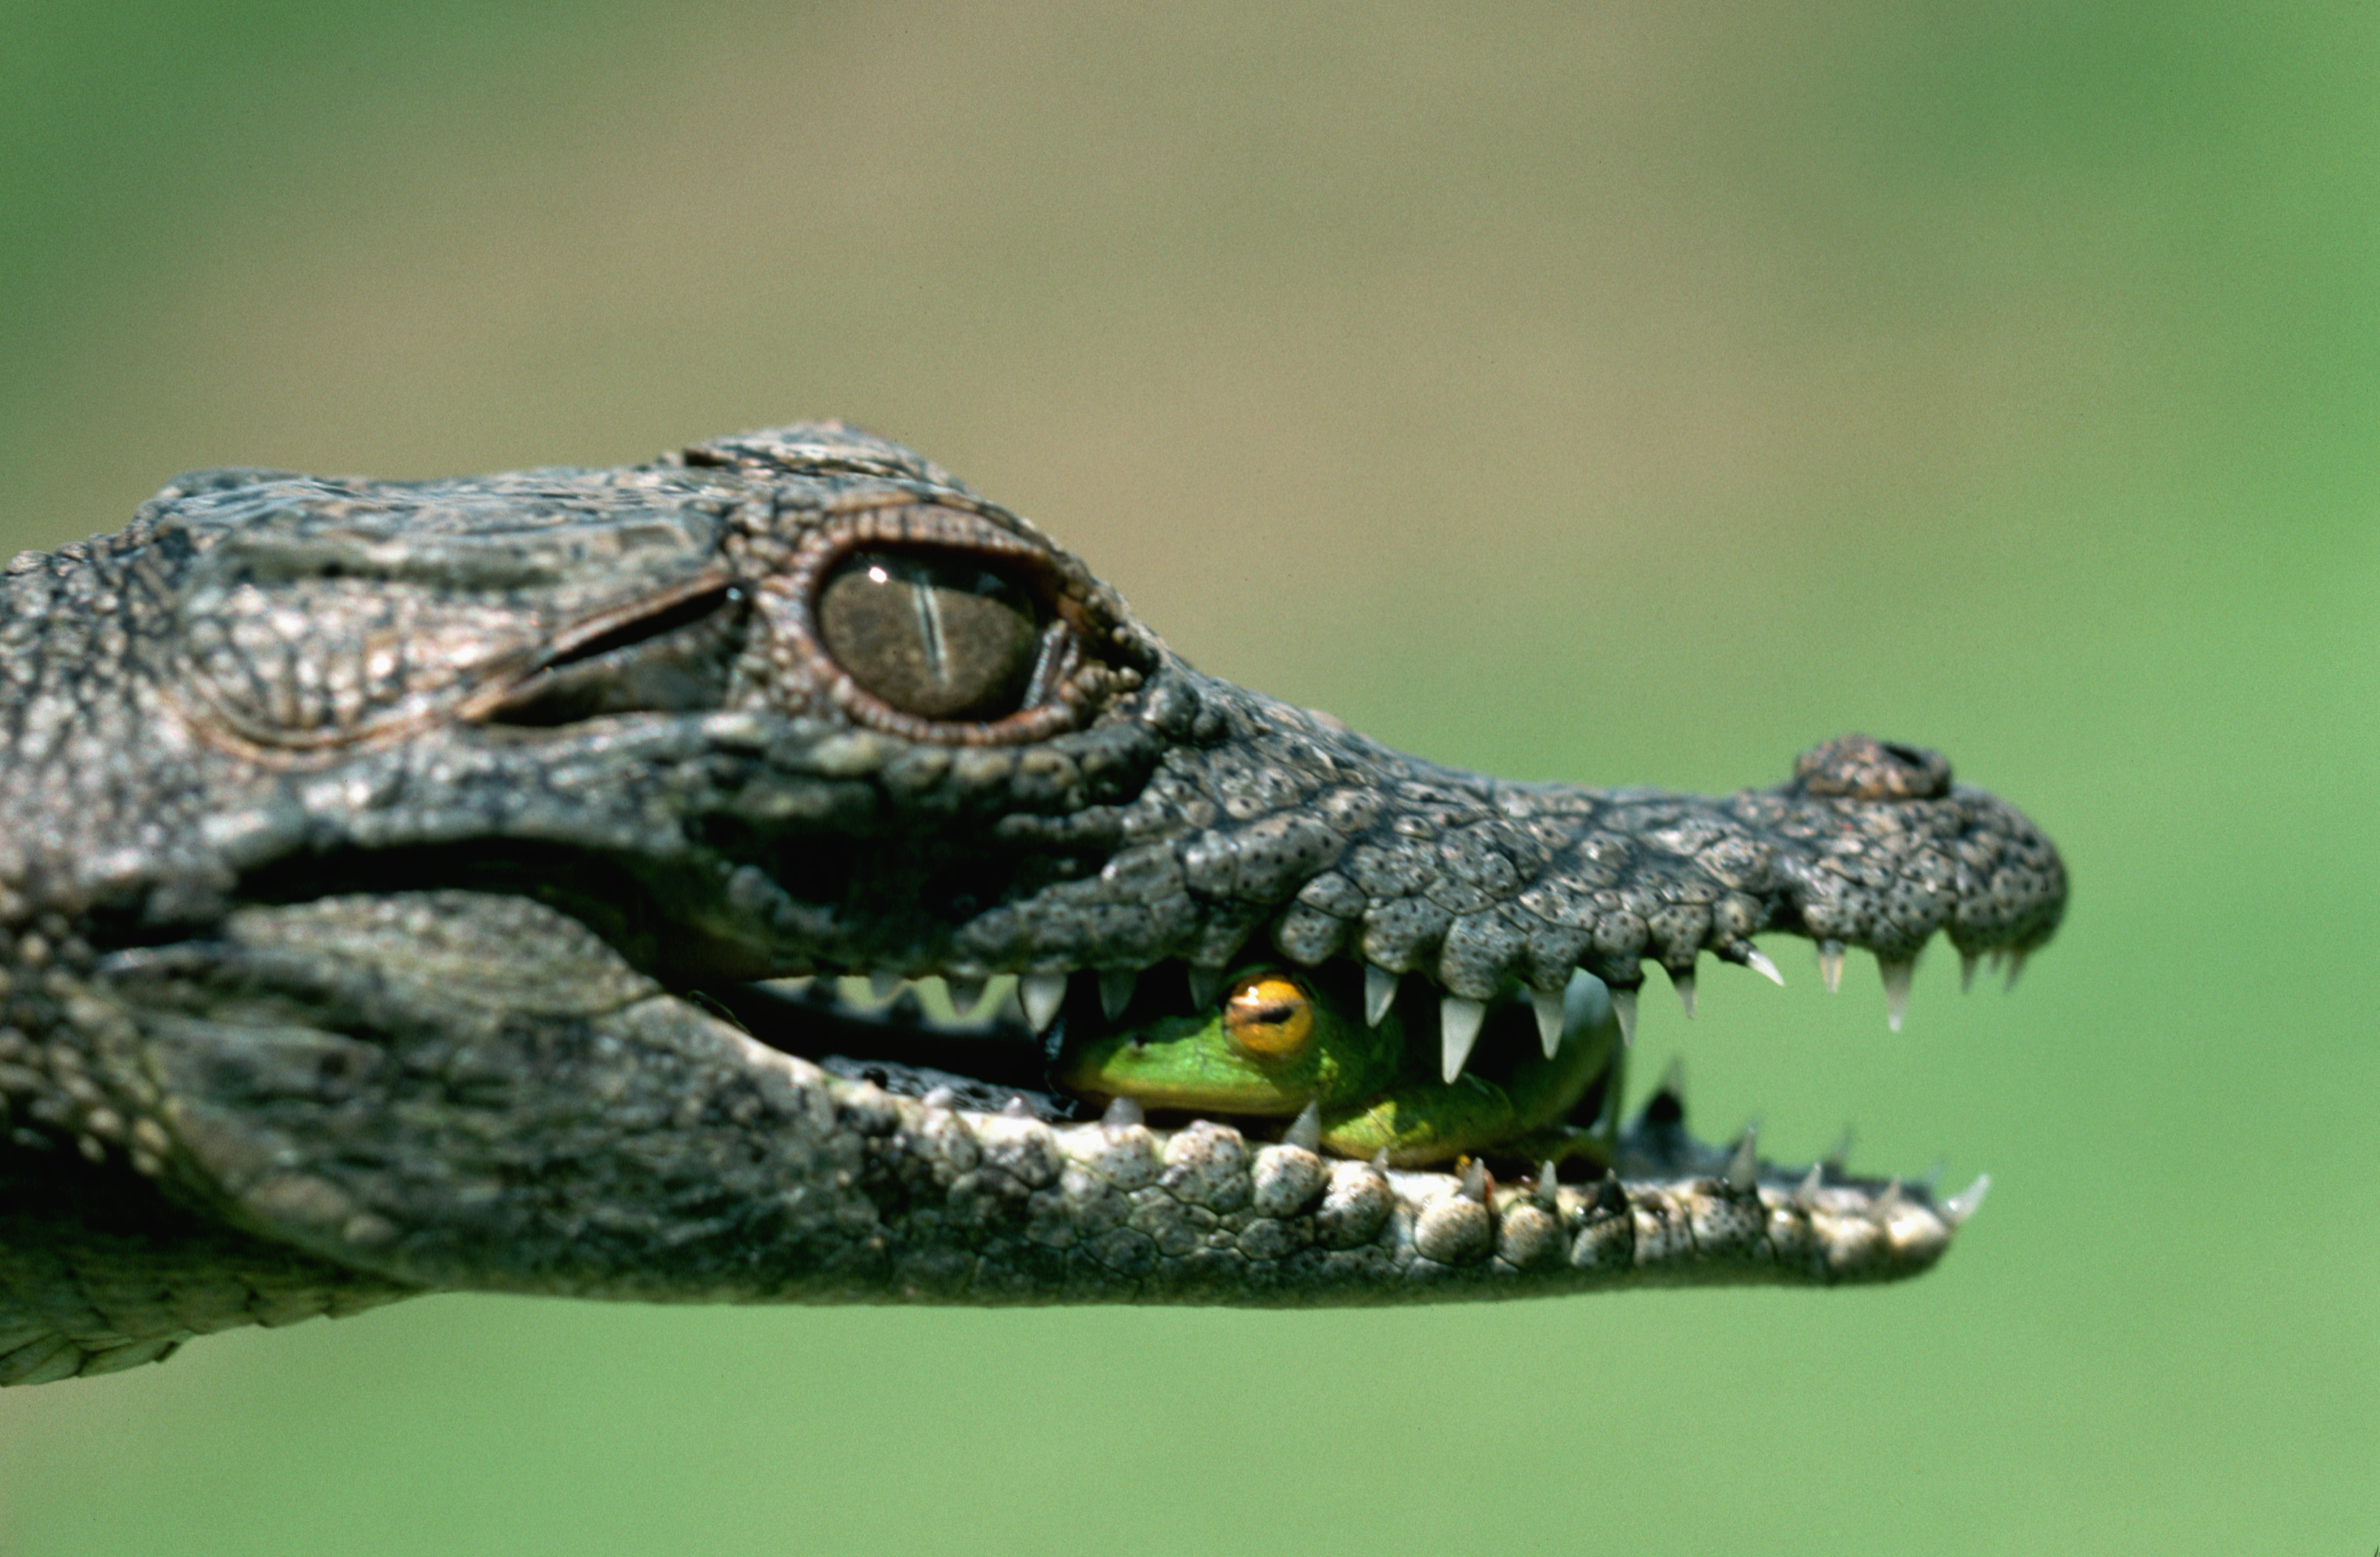 Строение тела крокодила приспособлено к водной среде: плоская голова...